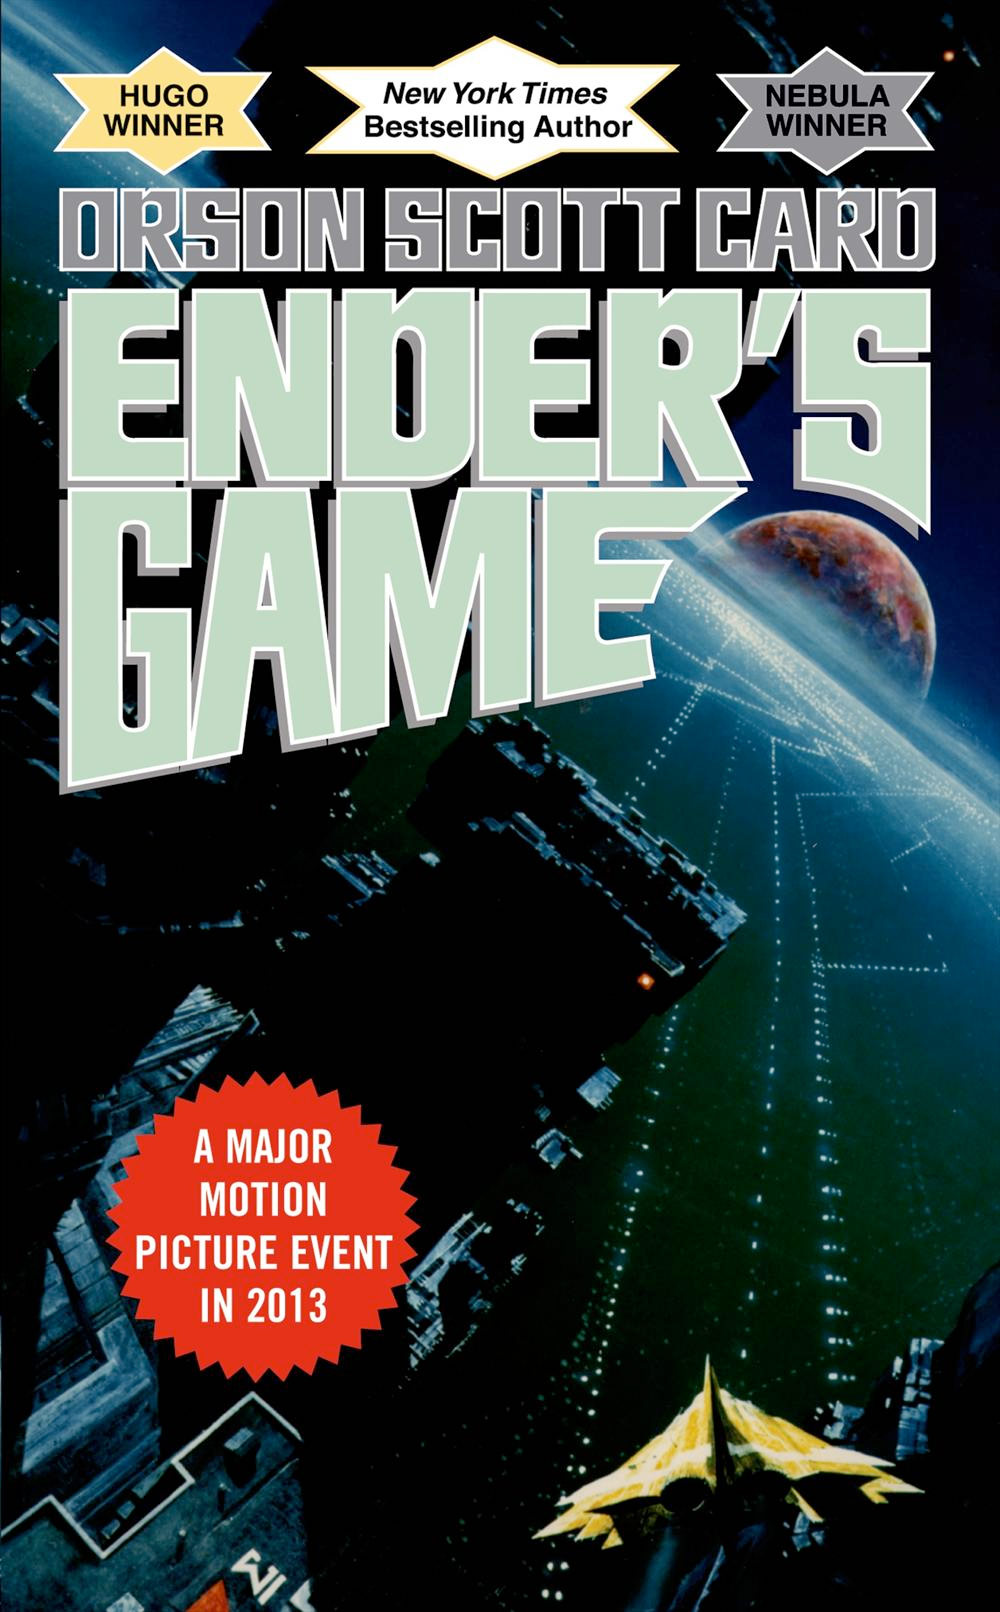 Với thể loại khoa học viễn tưởng hấp dẫn, Ender\'s Game là một tác phẩm đáng đọc. Hãy xem hình ảnh liên quan đến cuốn tiểu thuyết này để cảm nhận sự đặc sắc của câu chuyện.